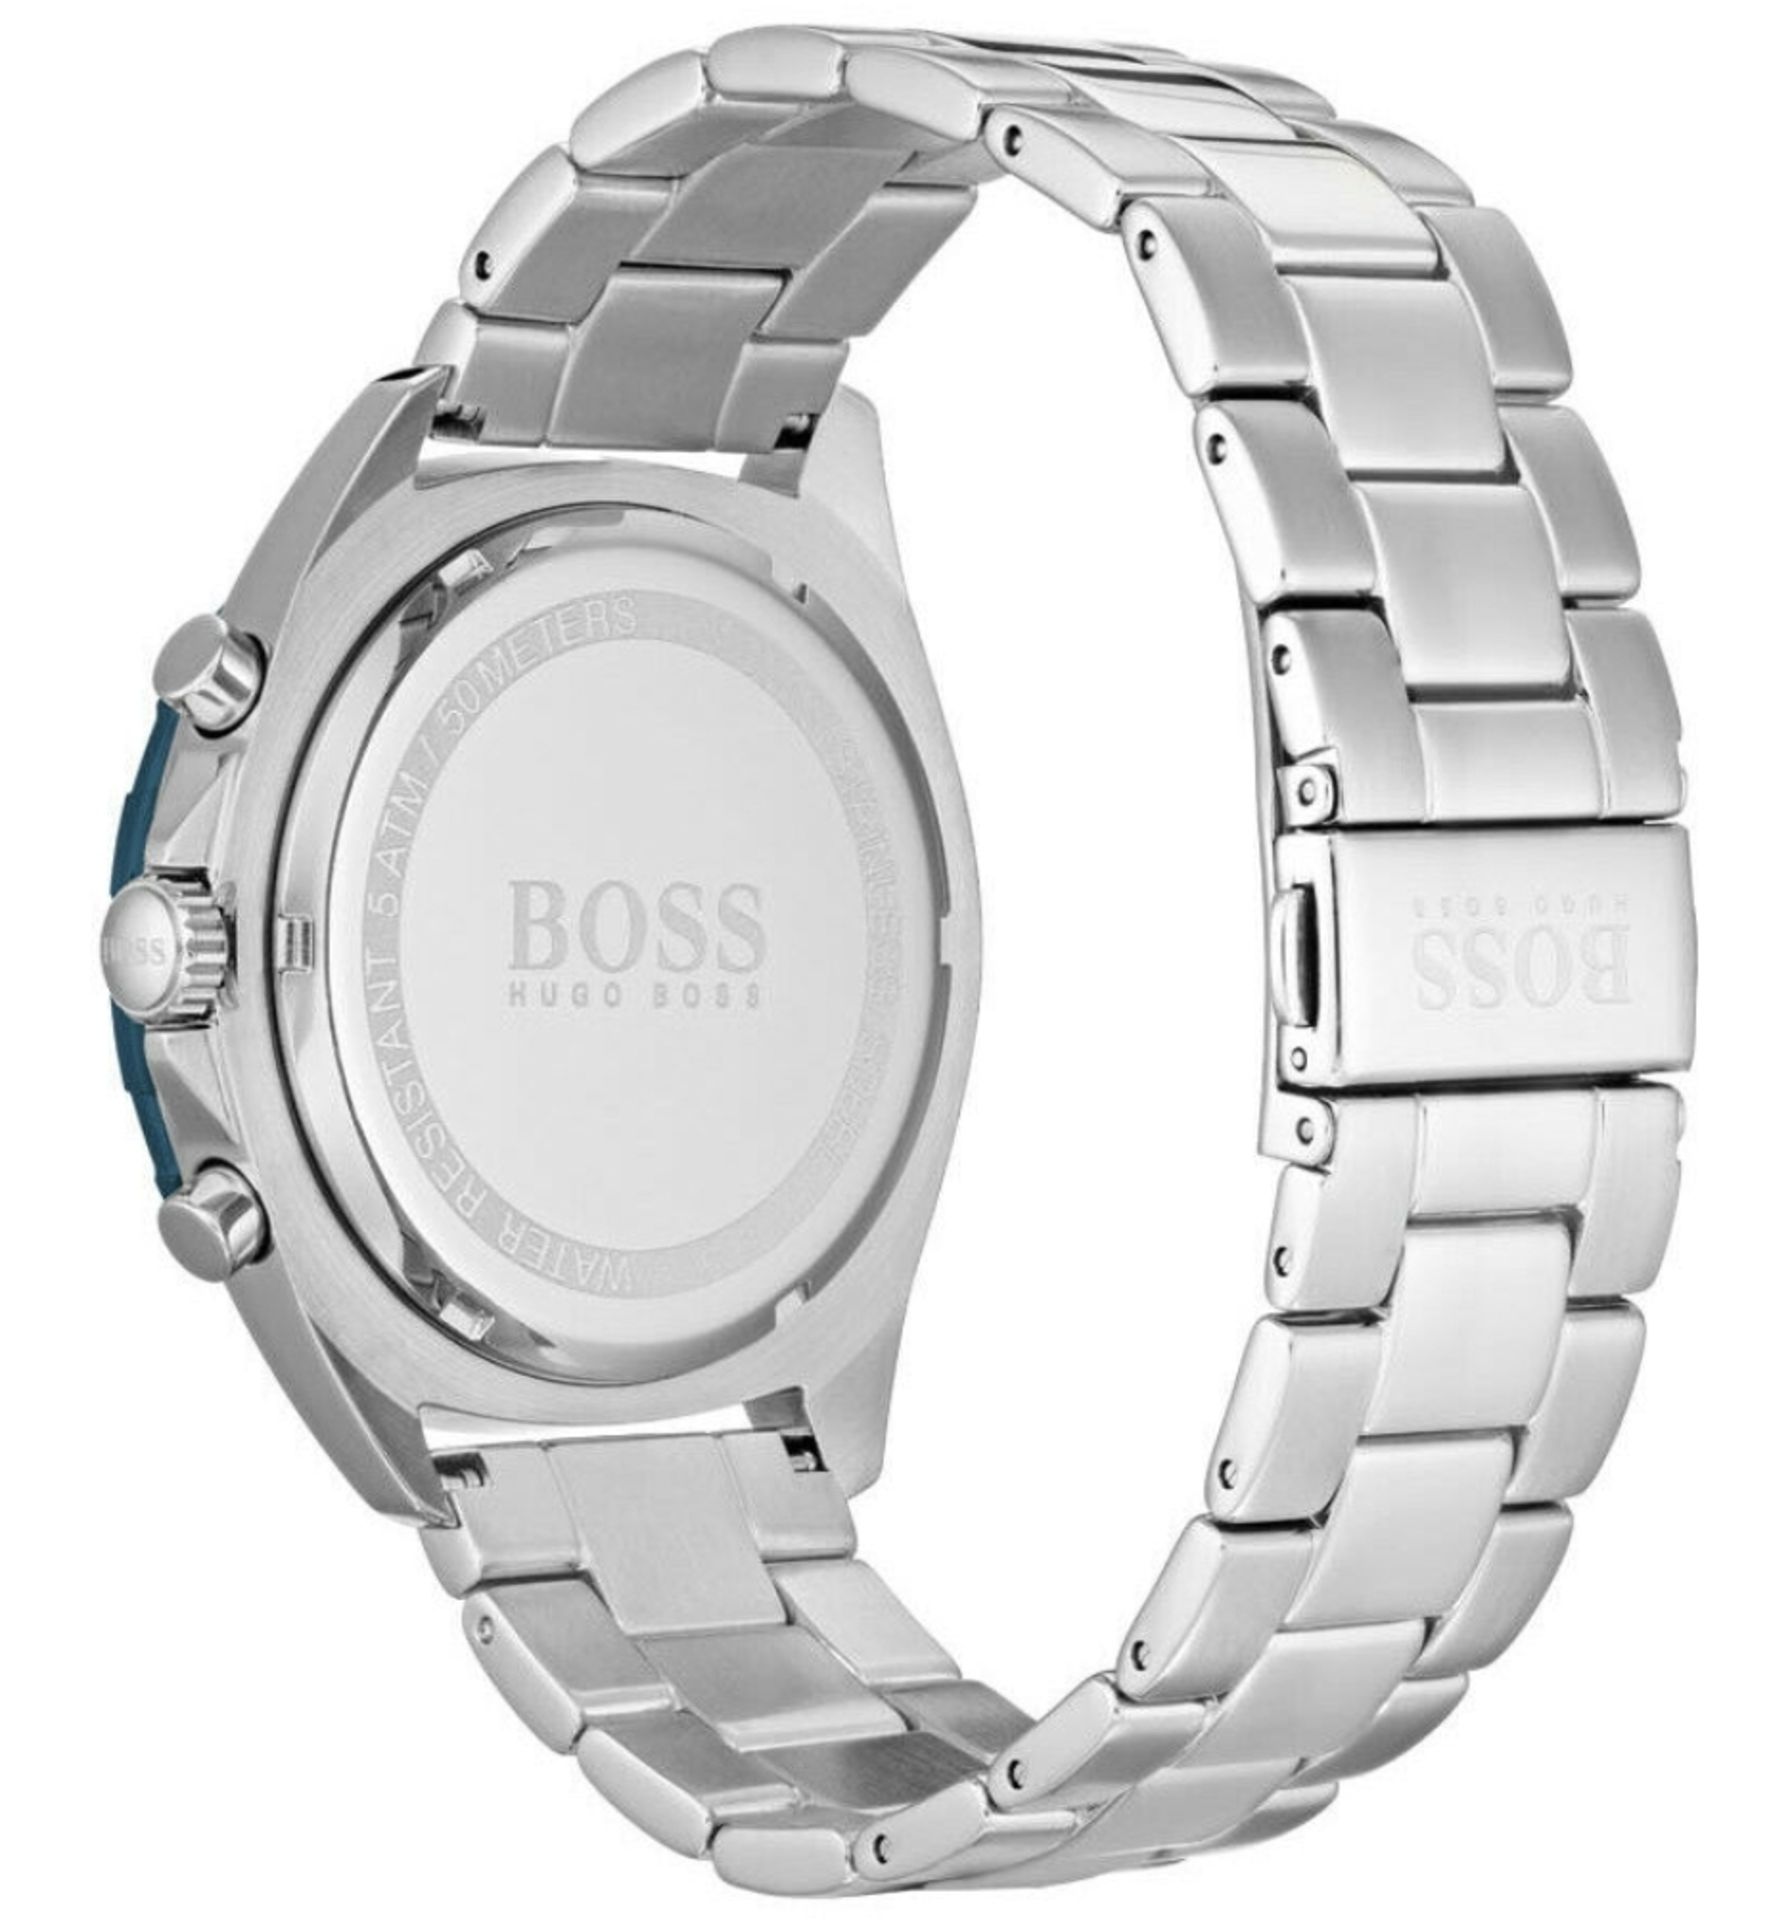 Hugo Boss Men's Intensity Silver Bracelet Chronograph Watch 1513665æ This Boss Intensity Men's Watch - Image 4 of 5